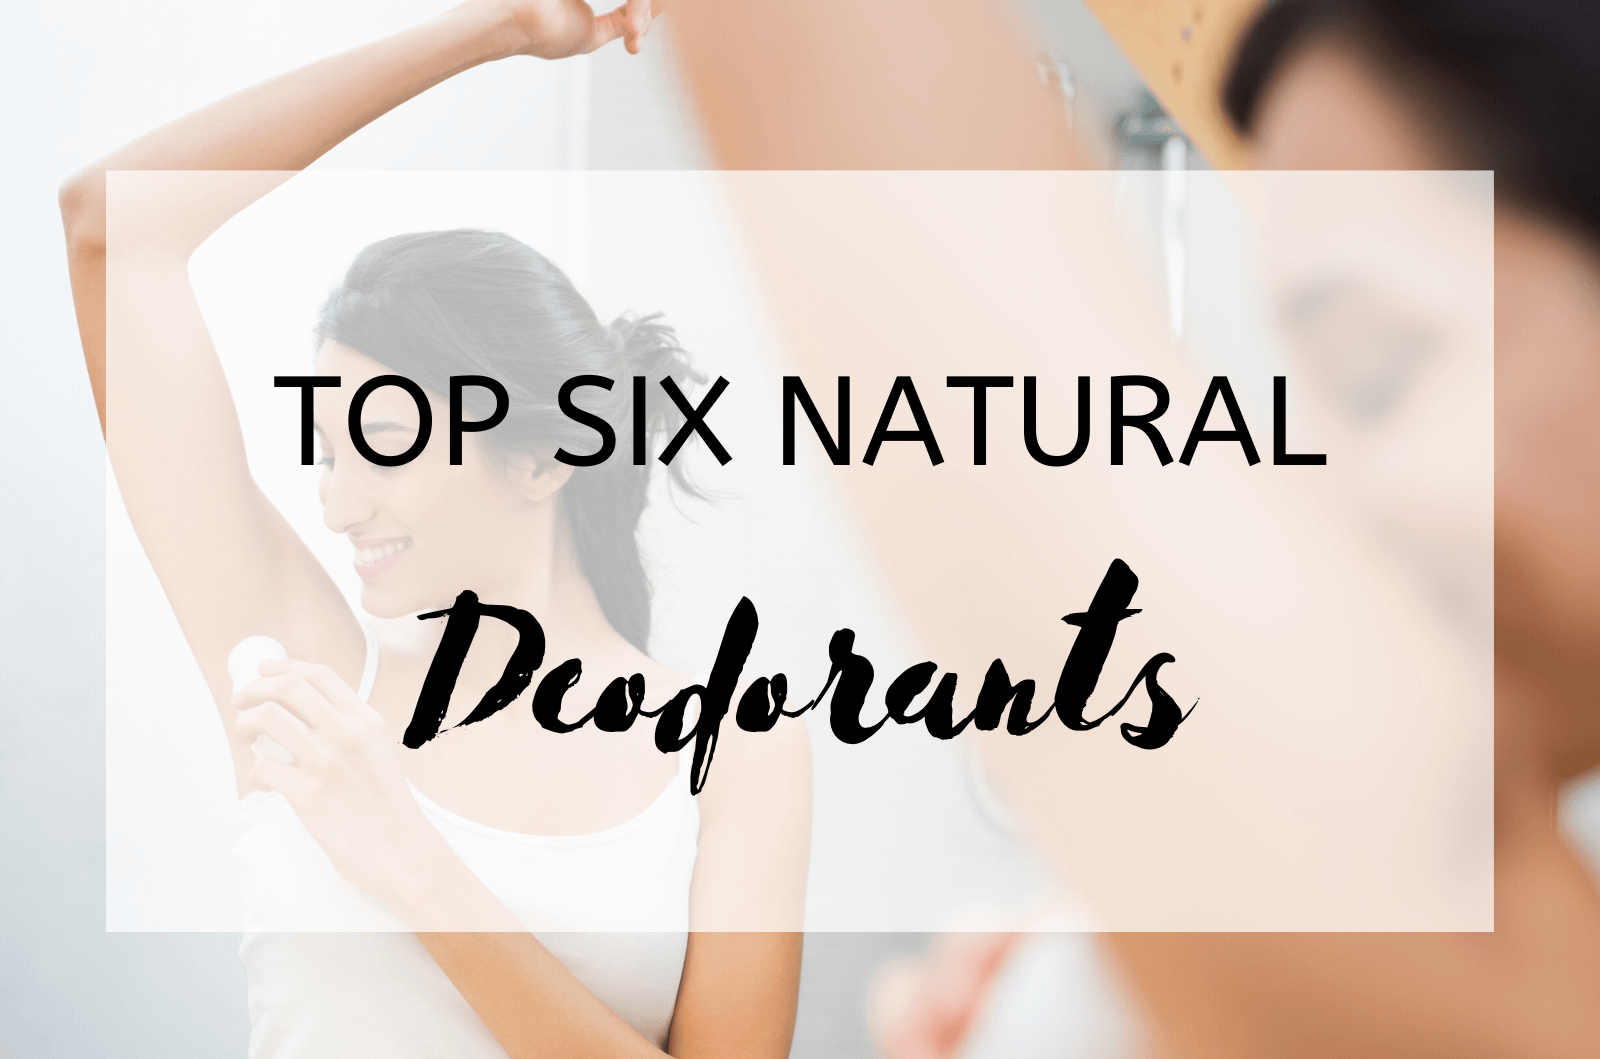 Top Six Natural Deodorants